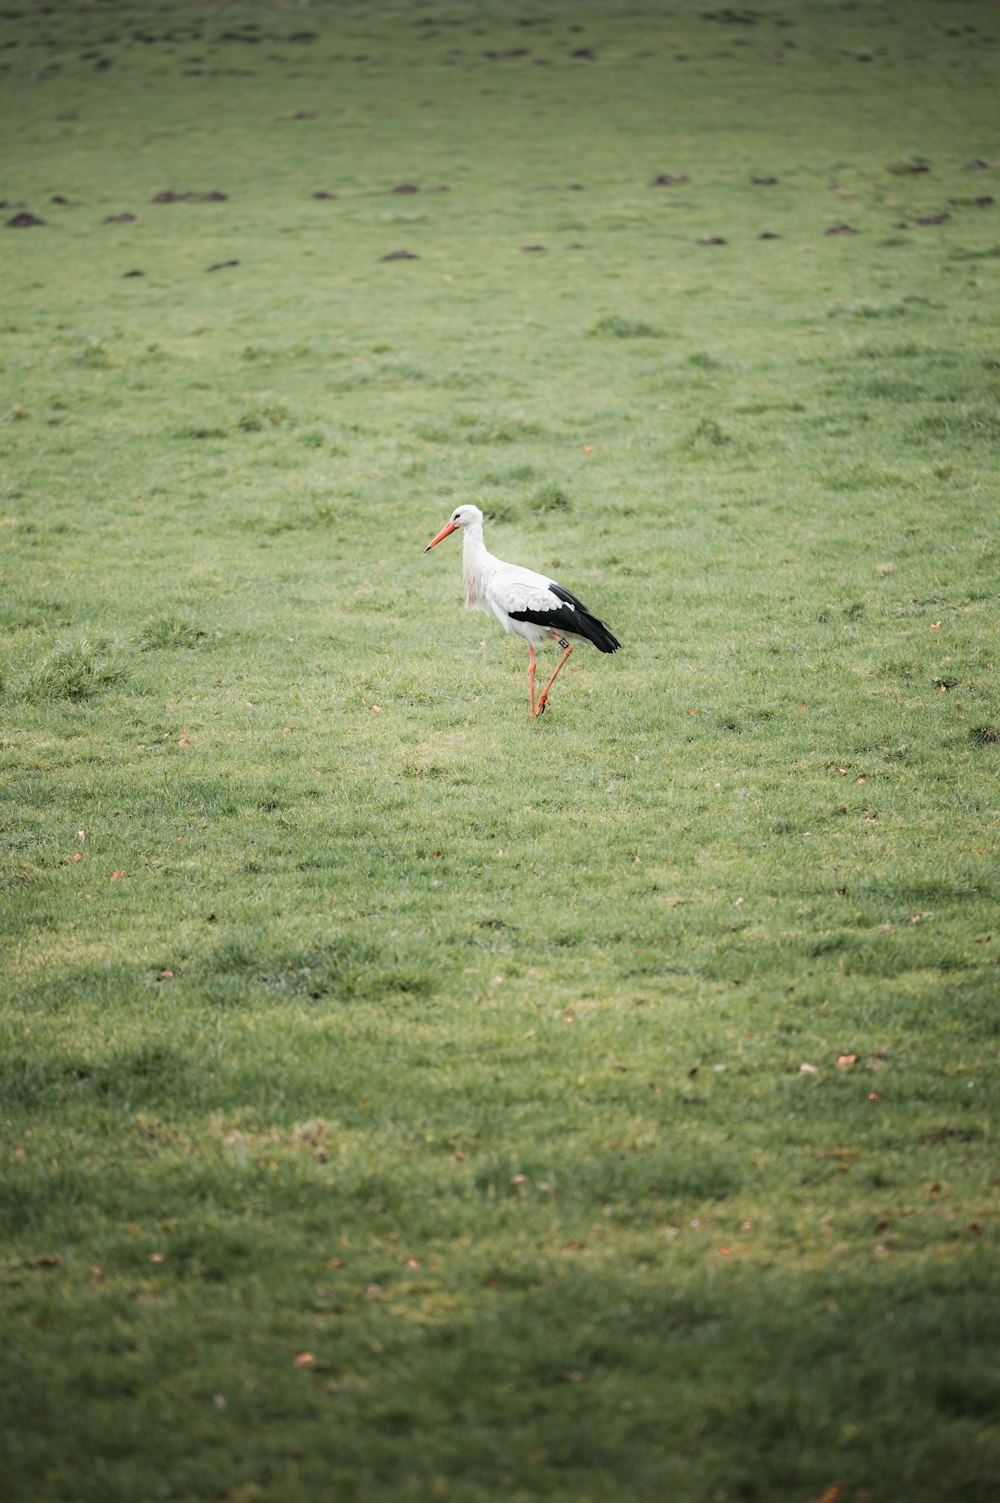 white stork flying over green grass field during daytime